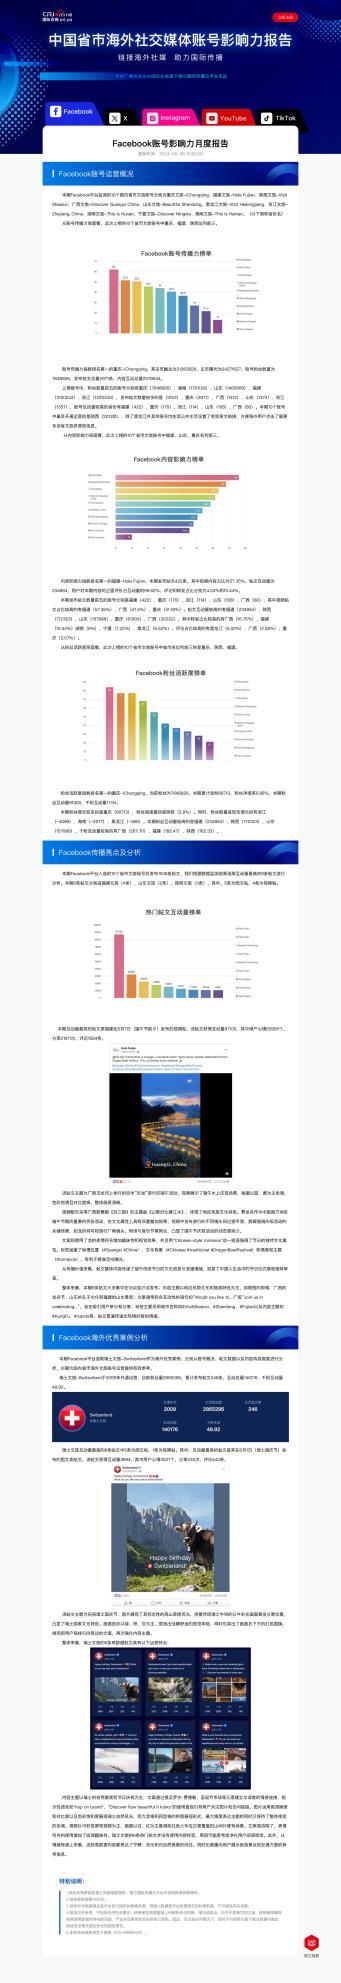 《中国海外社交媒体账号影响力报告》页面截图